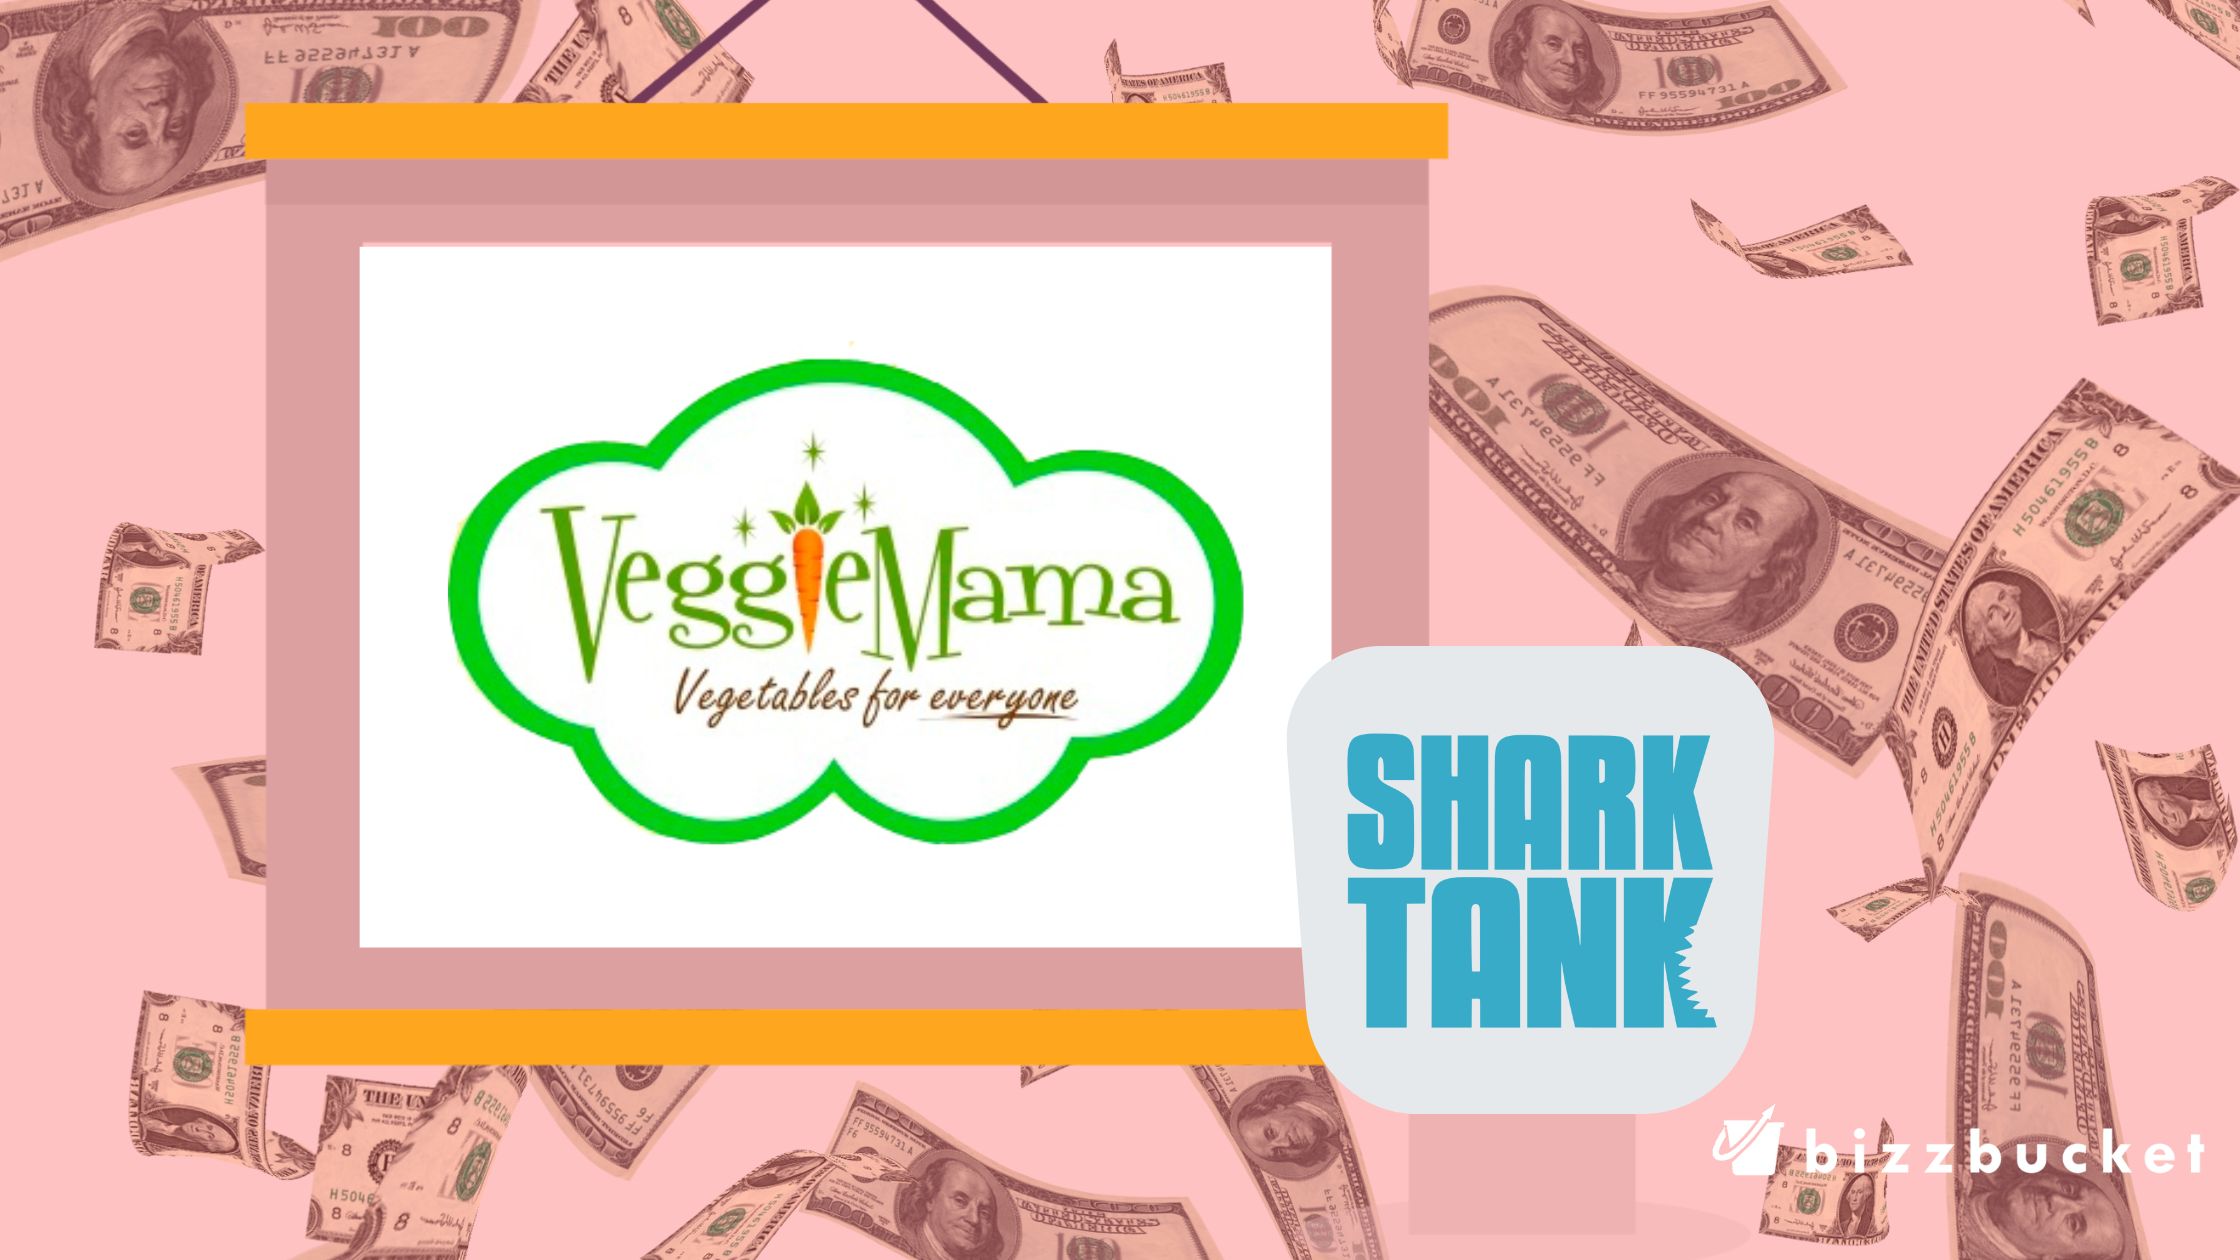 Veggie Mama shark tank update